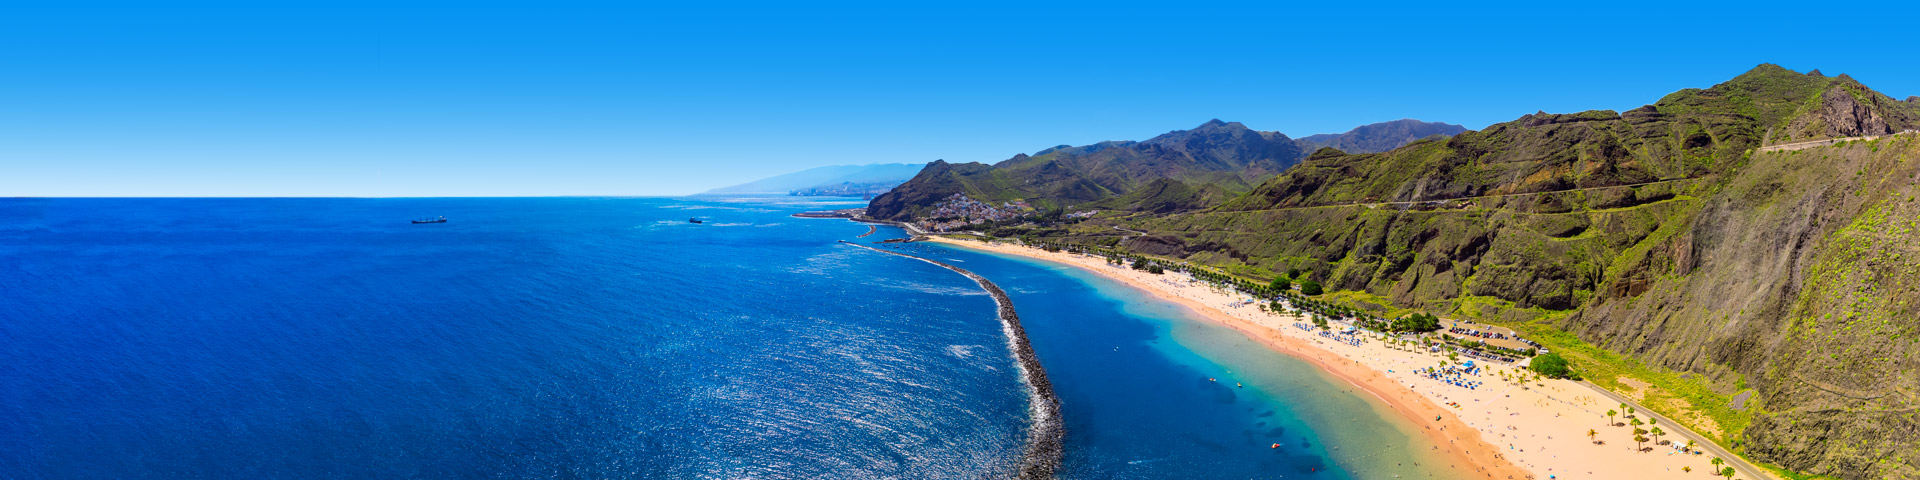 lang strand op Tenerife